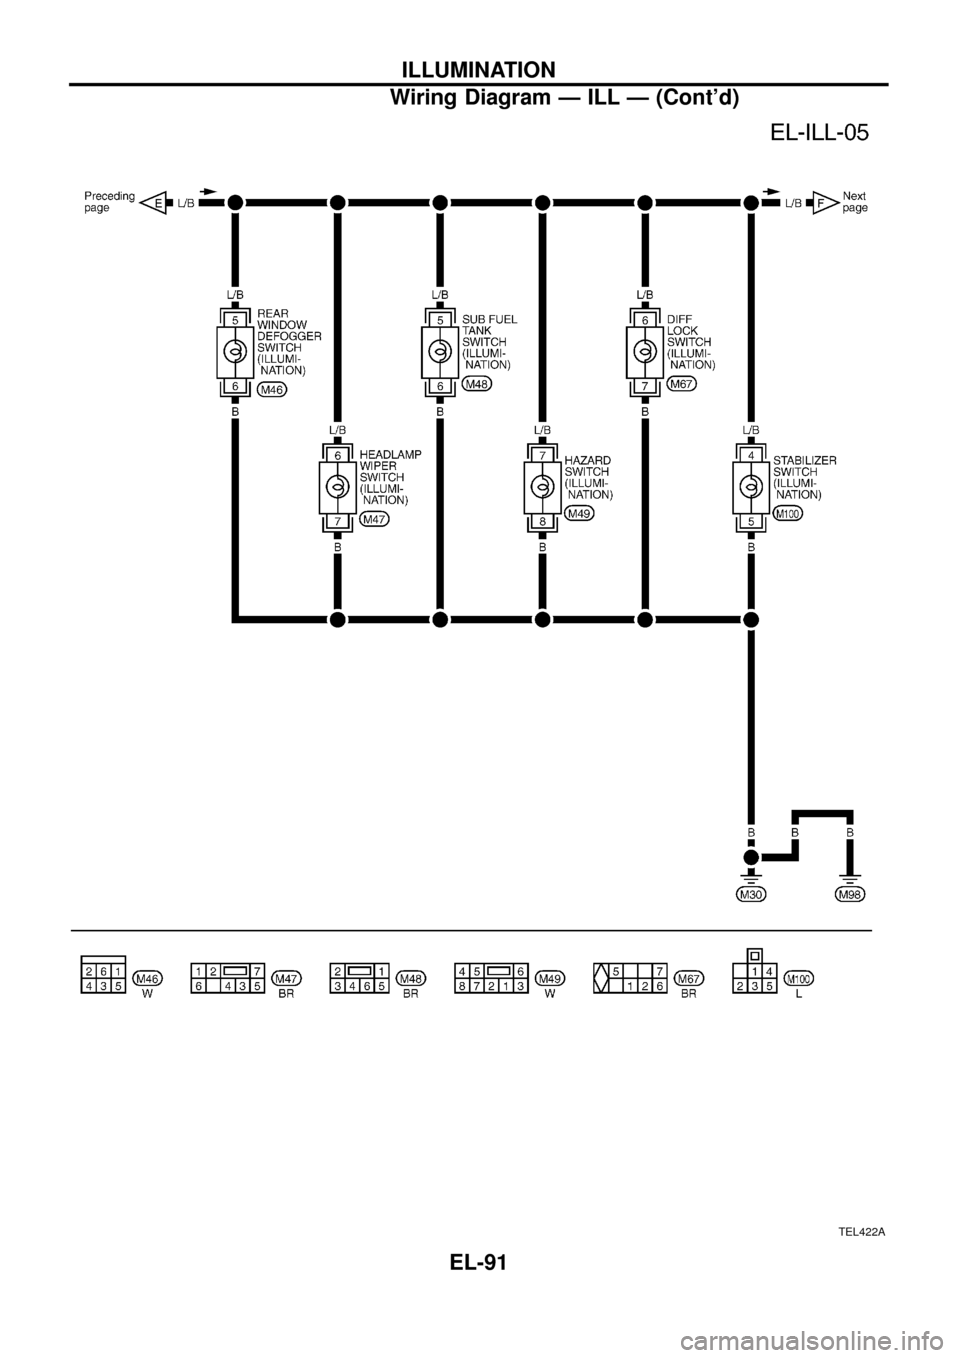 NISSAN PATROL 1998 Y61 / 5.G Electrical System Owners Guide TEL422A
ILLUMINATION
Wiring Diagram Ð ILL Ð (Contd)
EL-91 